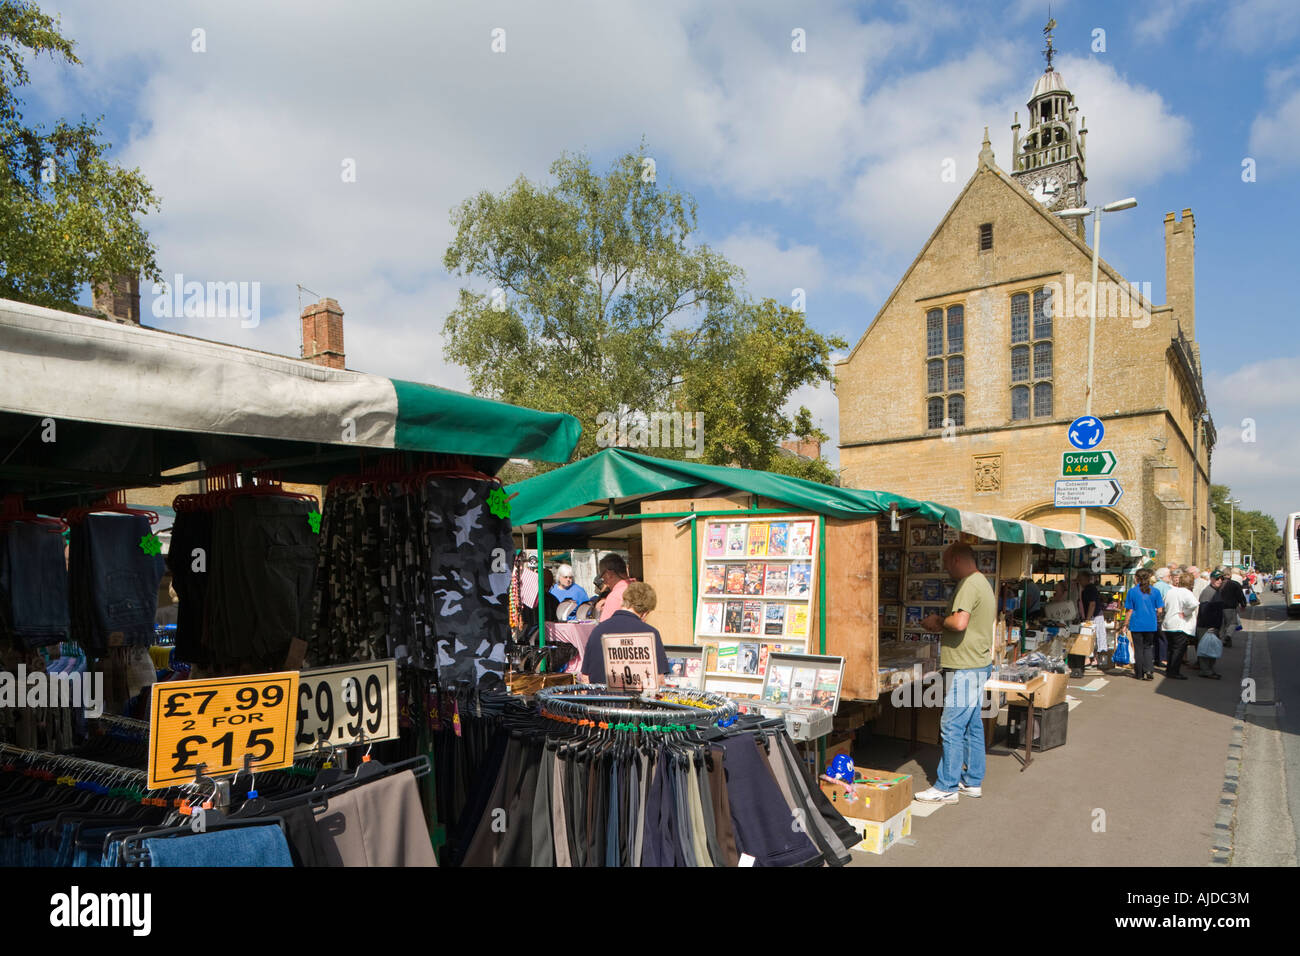 Le marché du mardi par le Redesdale Hall dans la ville de Cotswold Moreton in Marsh, Gloucestershire Banque D'Images